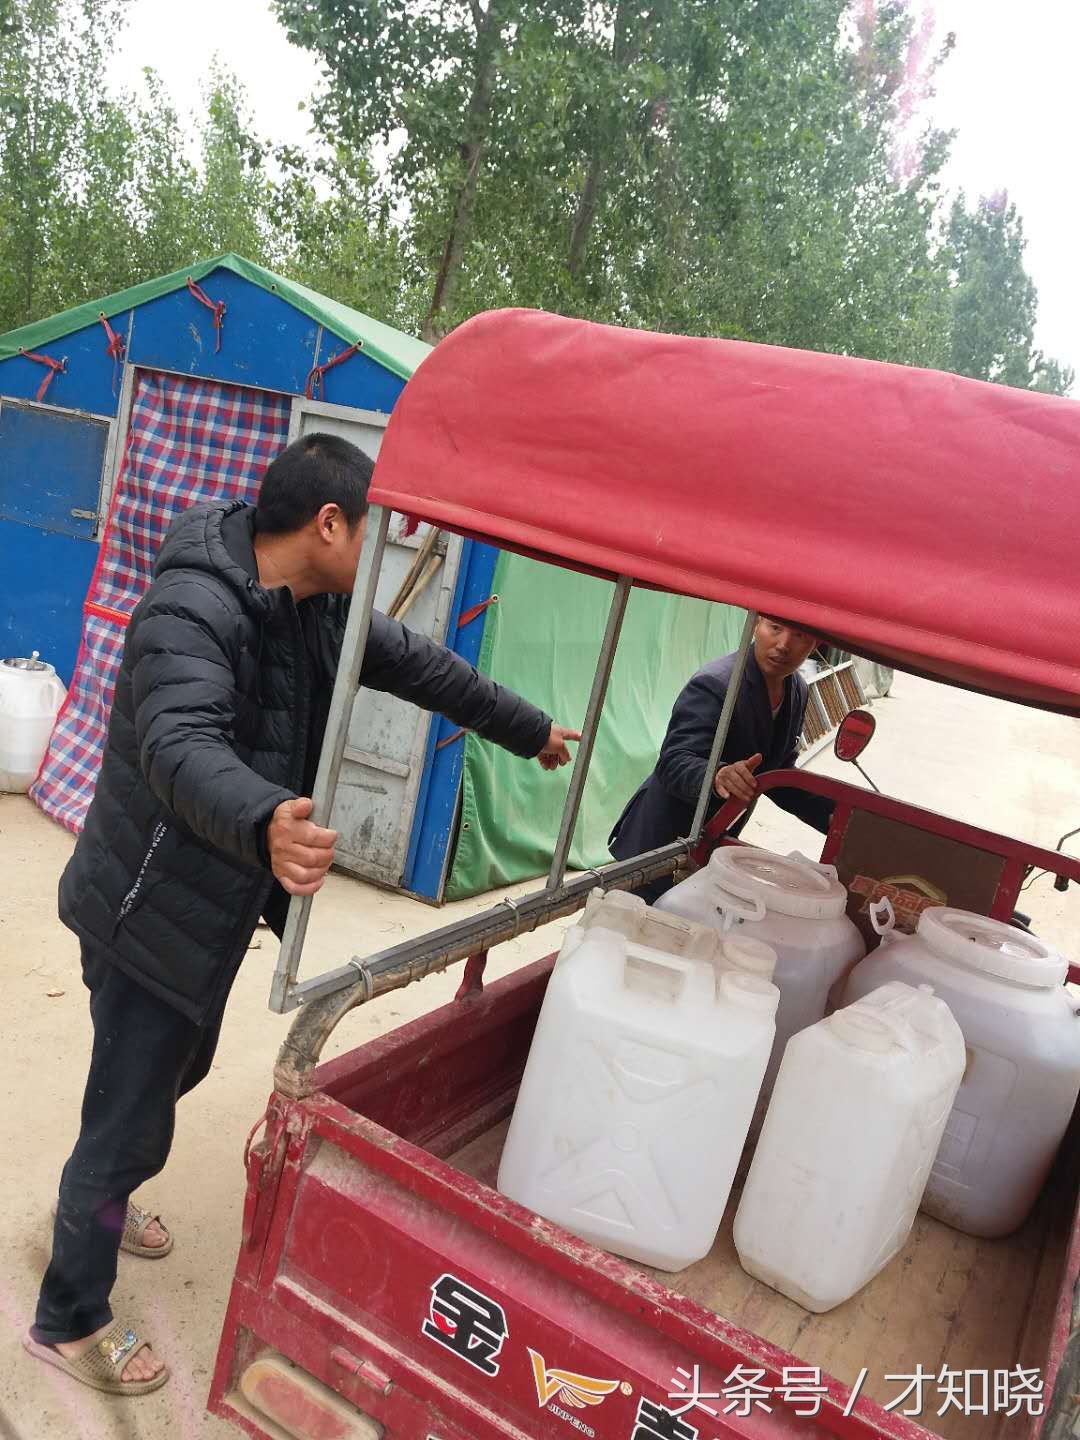 0公里之外的浙江养蜂人 在豫北农村售蜂王浆 